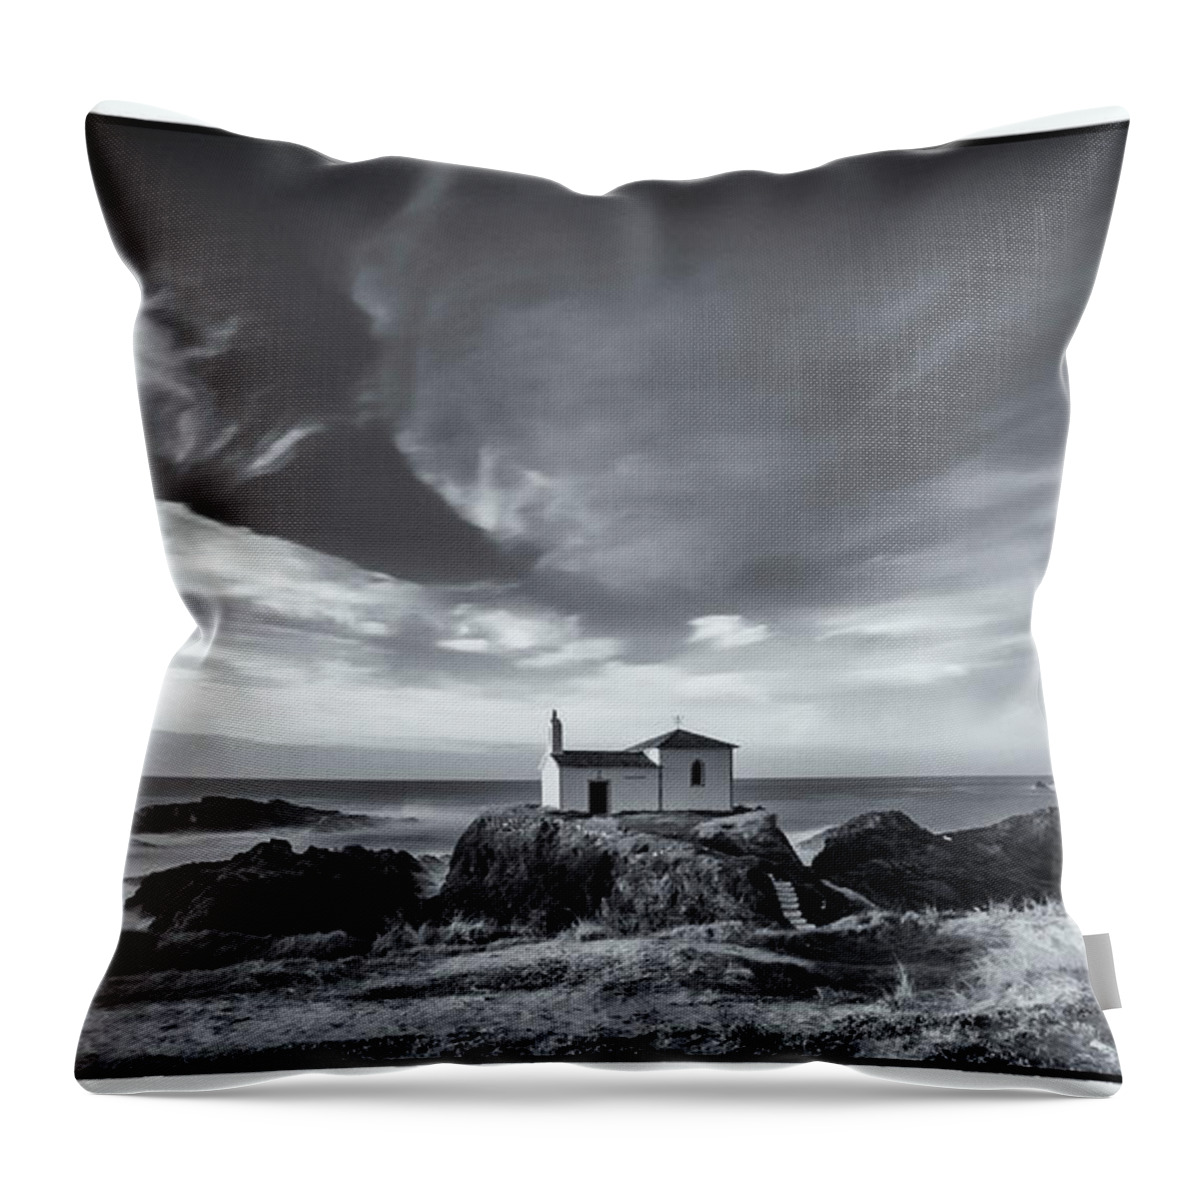  Throw Pillow featuring the photograph Virxe Do Porto Meiras Galicia Spain #1 by Pablo Avanzini